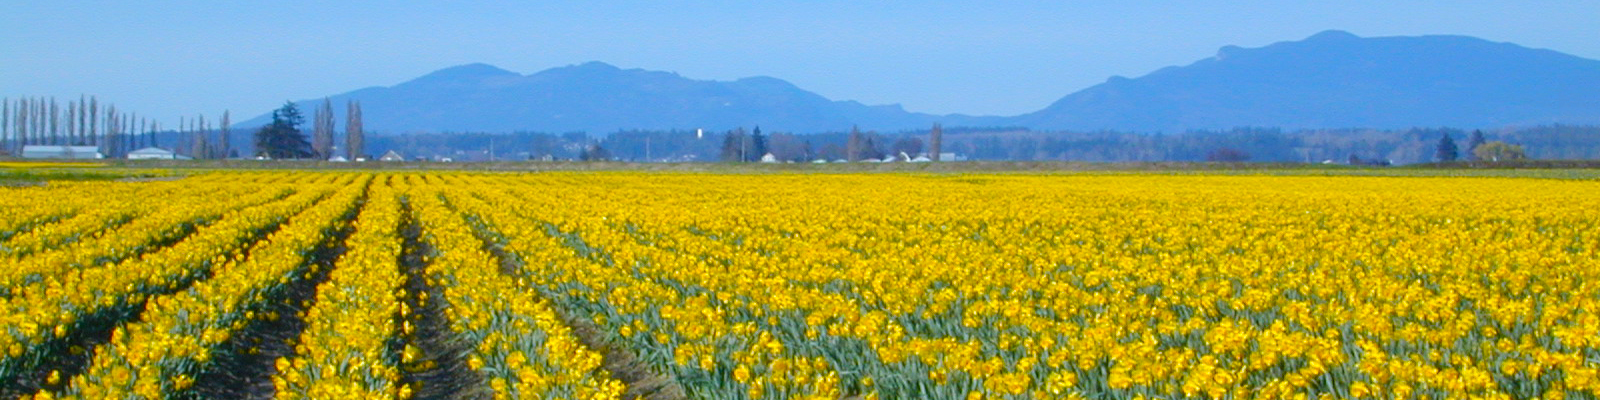 Daffodil field in La Conner